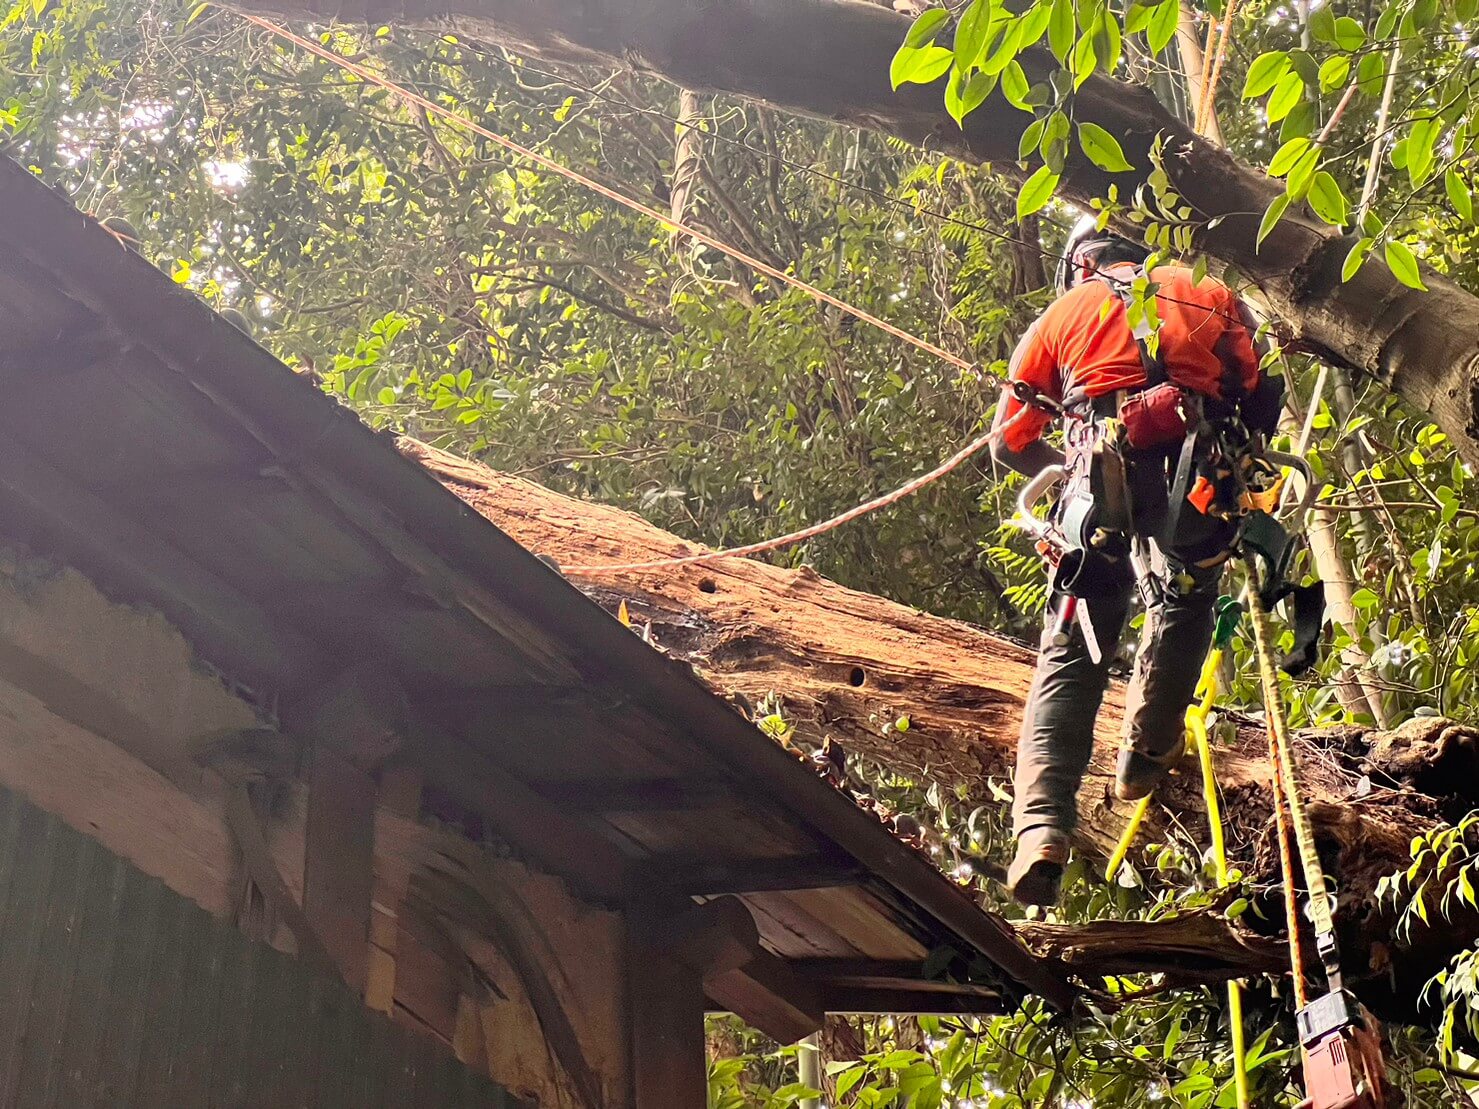 幹の吊り切りを行う山猿。瓦の被害を最小限にしつつ伐採作業を進めます